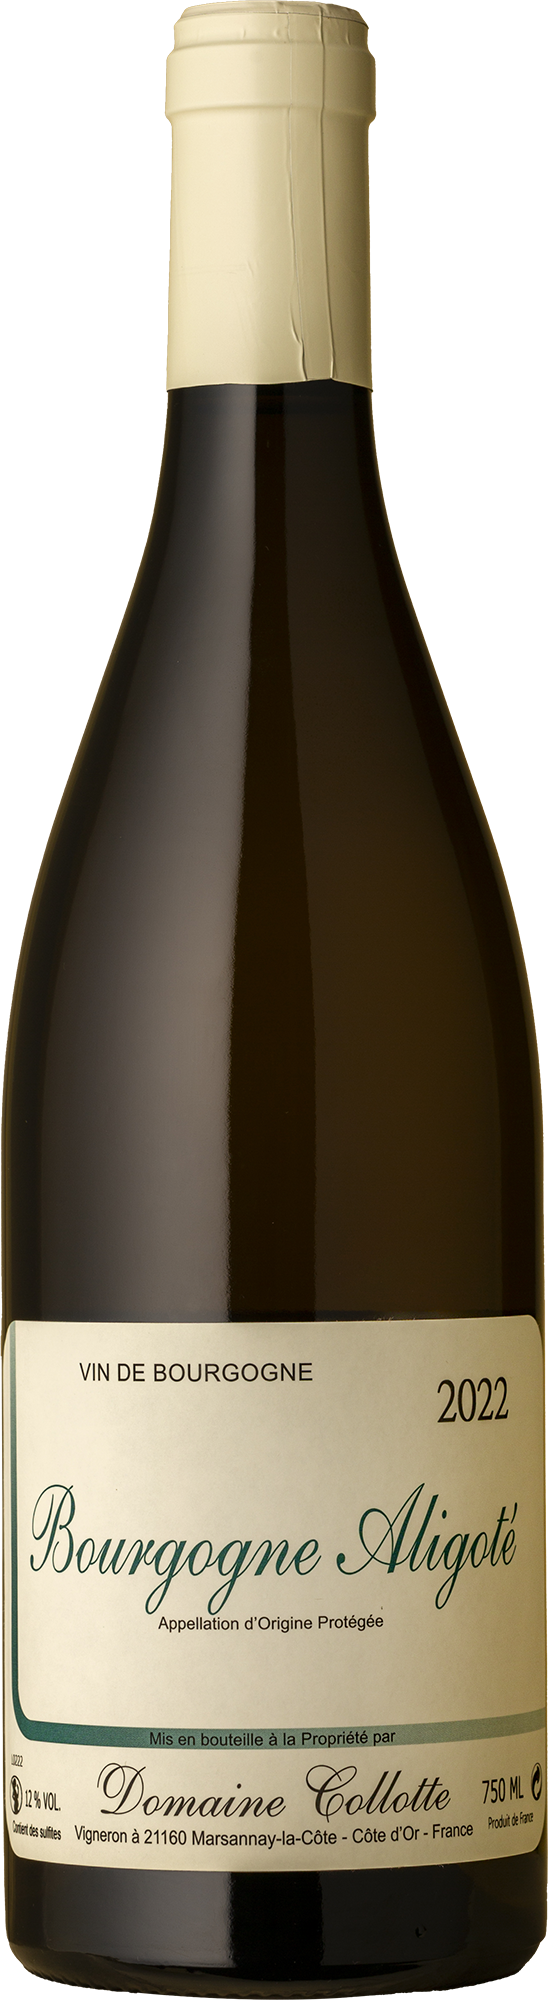 Domaine Collotte - Aligoté 2022 White Wine